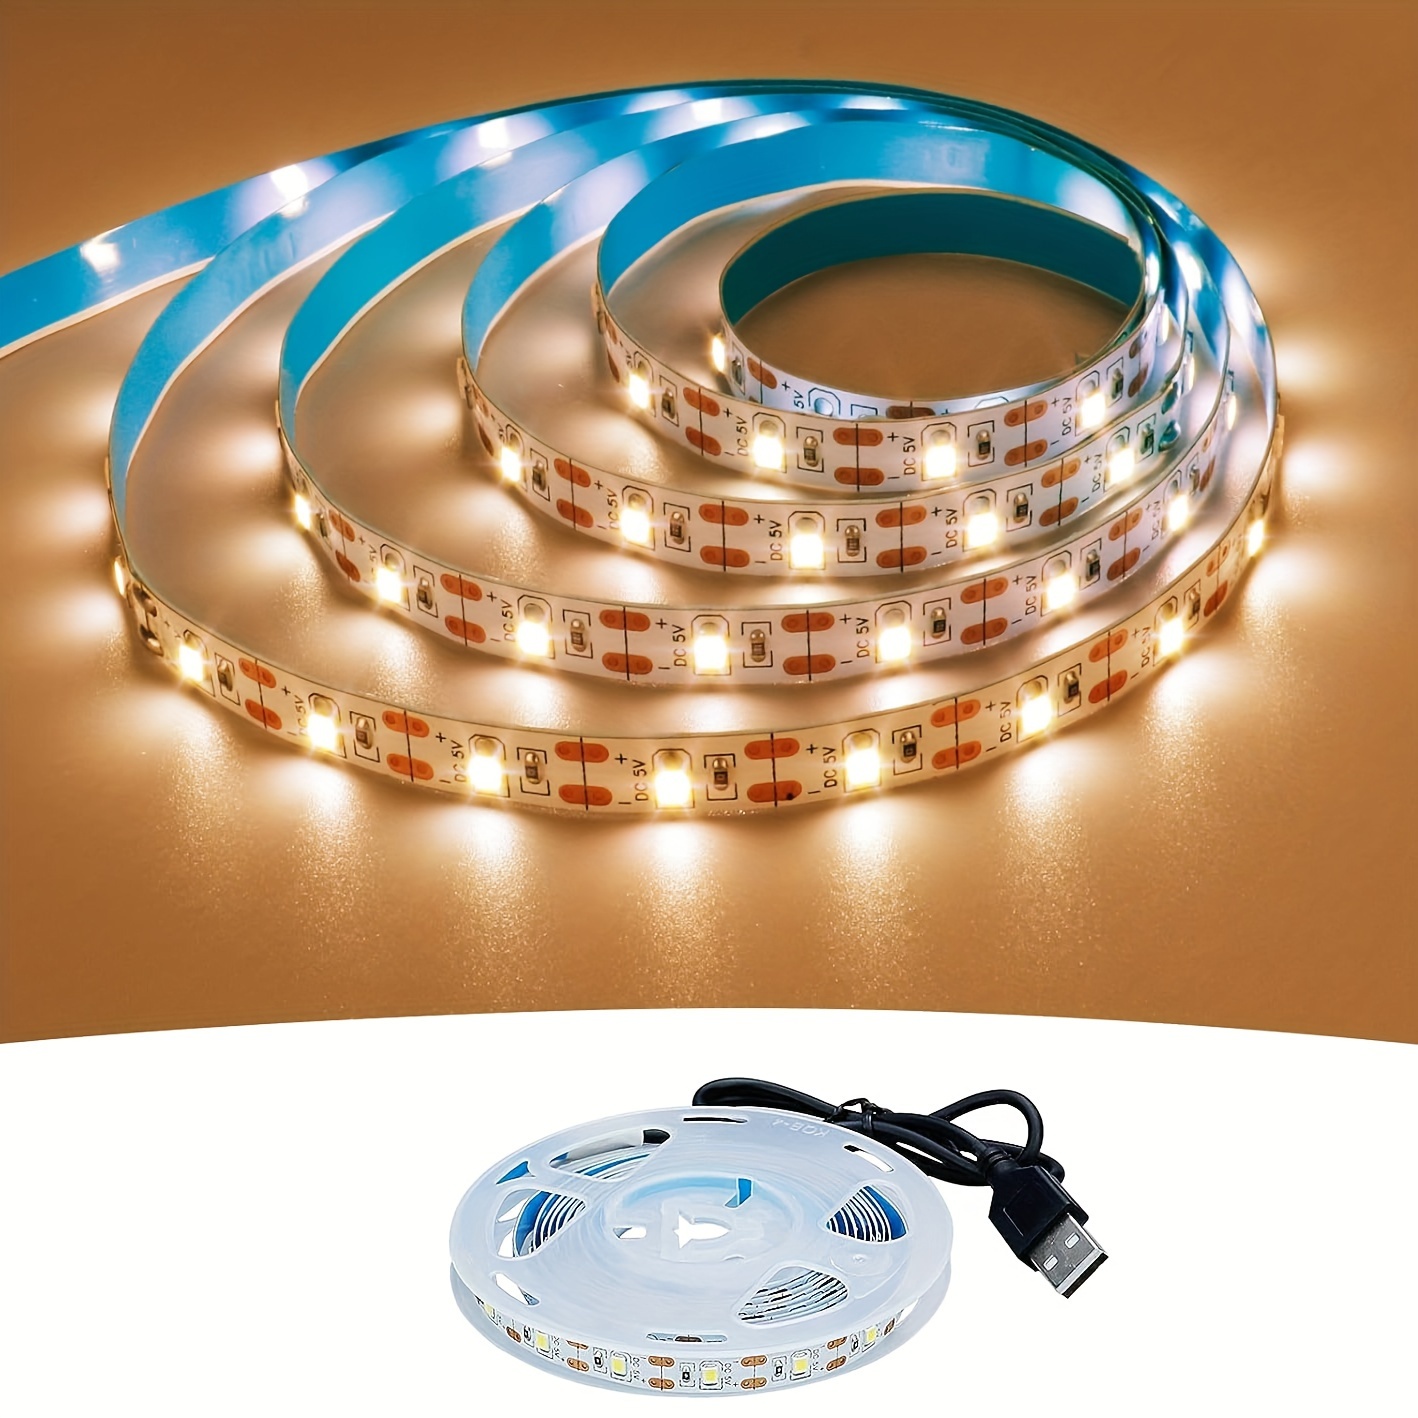 COB LED Strip Light with Remote, 16.4FT/5M Flexible High Density LED  Light,4000K Natural White 2400LEDs Super Bright LED Light Strip CRI 90+ for